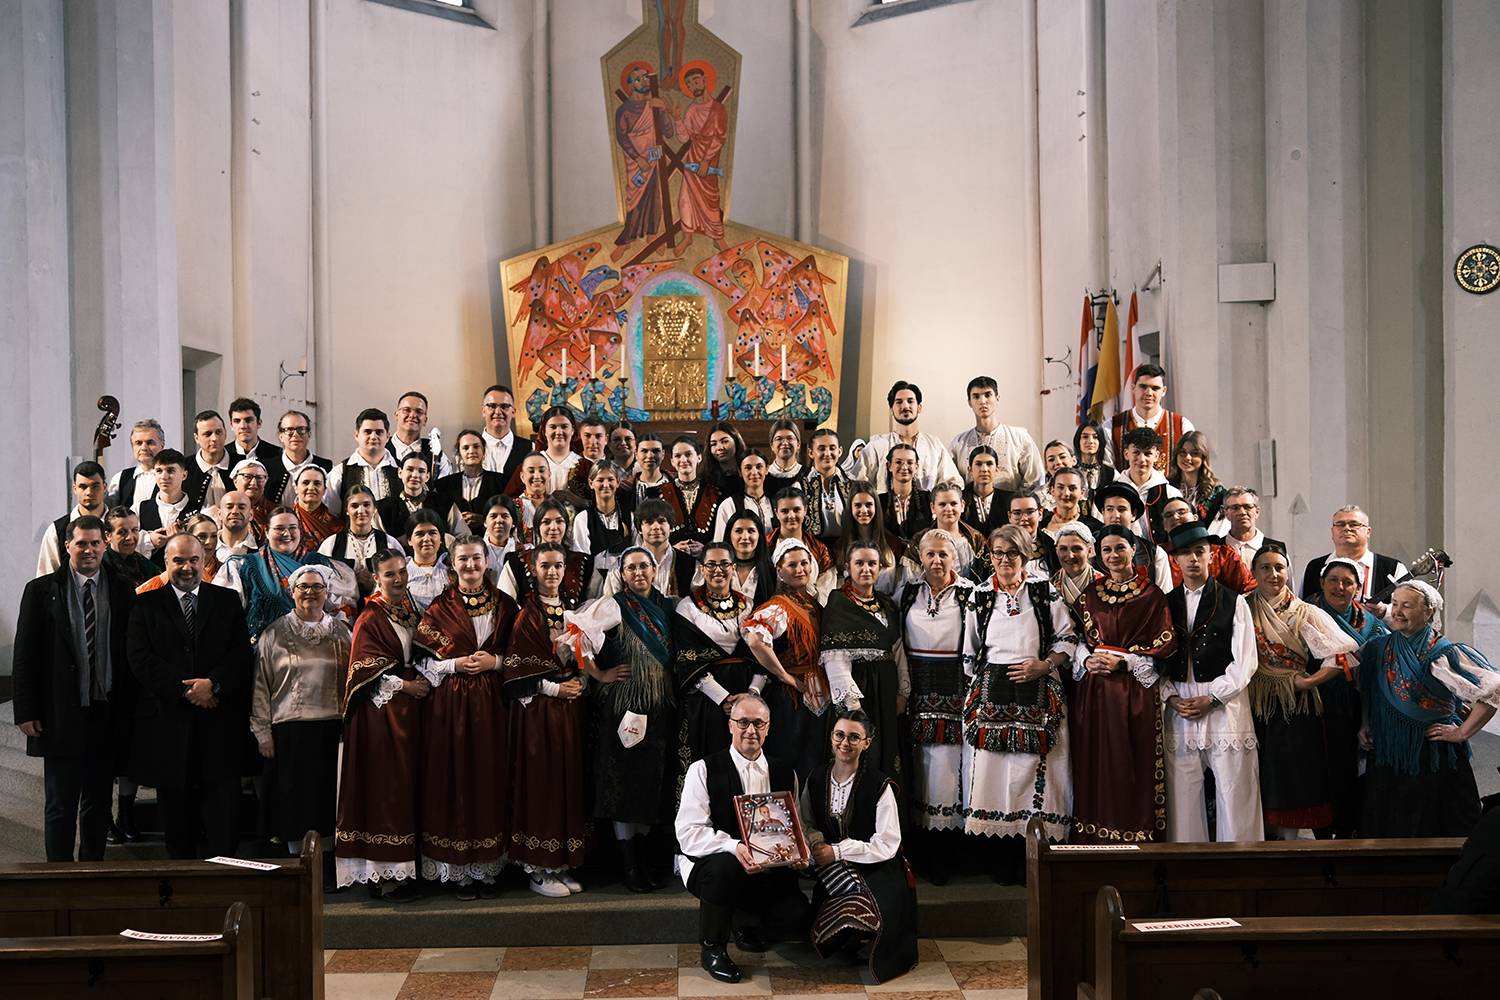 Hrvatska katolička župa u Salzburgu proslavila je svetkovinu svog nebeskog zaštitnika bl. Alojzija Stepinca